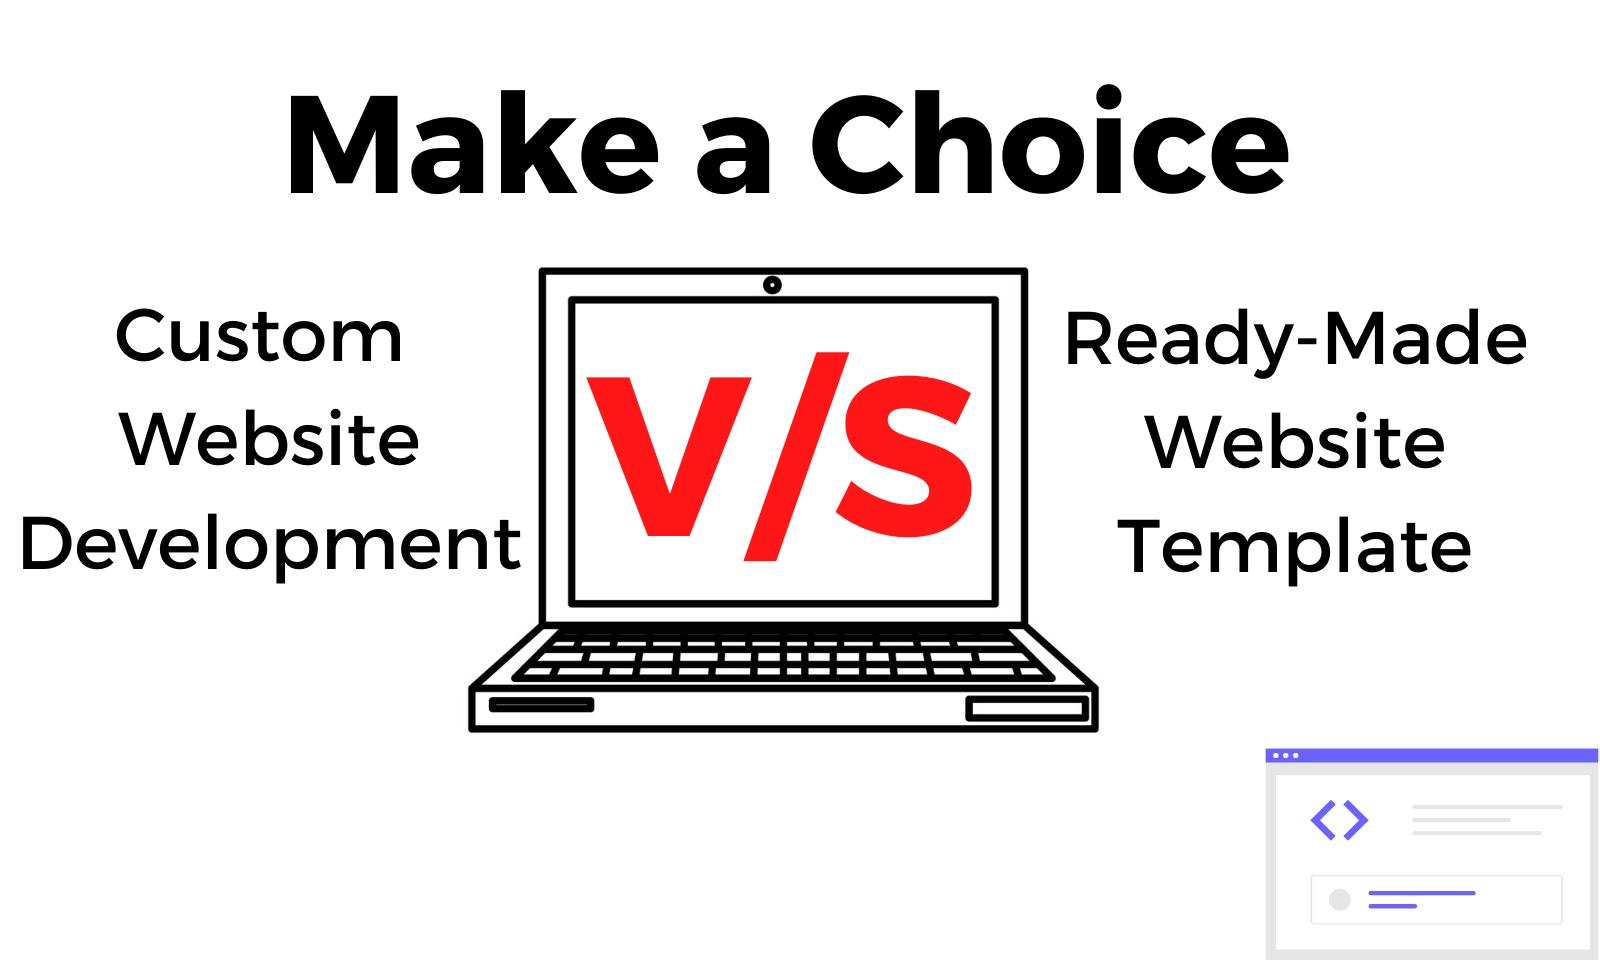 Make a choice – Custom Website Development Versus Ready-made Website Template